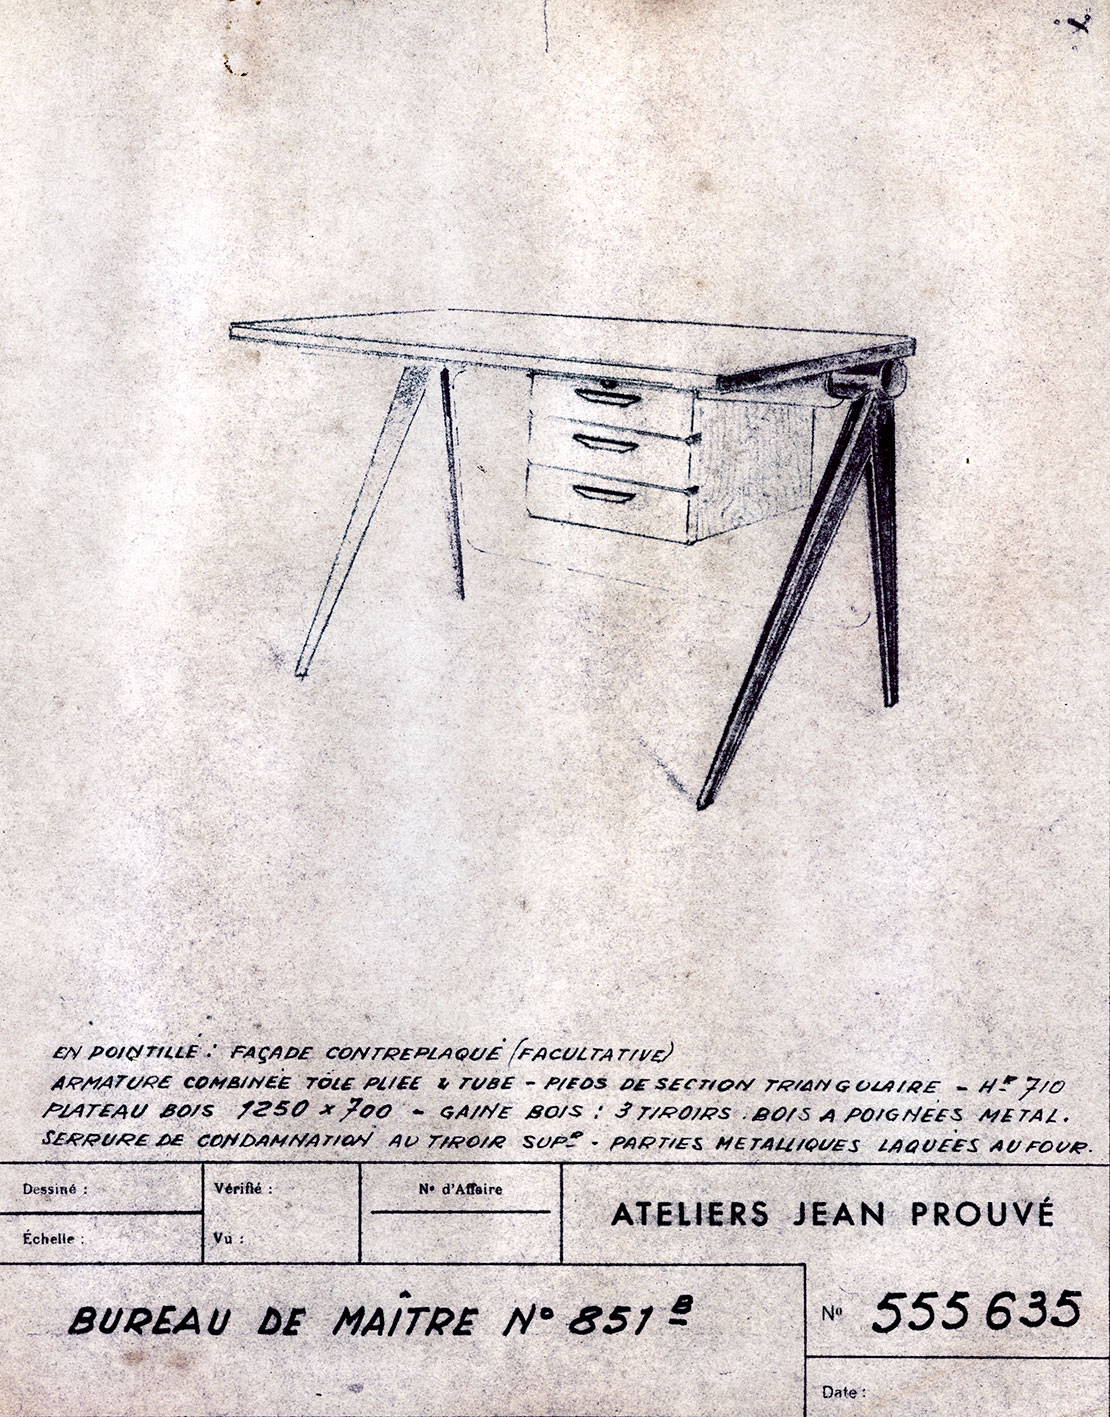 « Bureau de maître n° 851 ». Fiche descriptive Ateliers Jean Prouvé n° 555.635, janvier 1953.